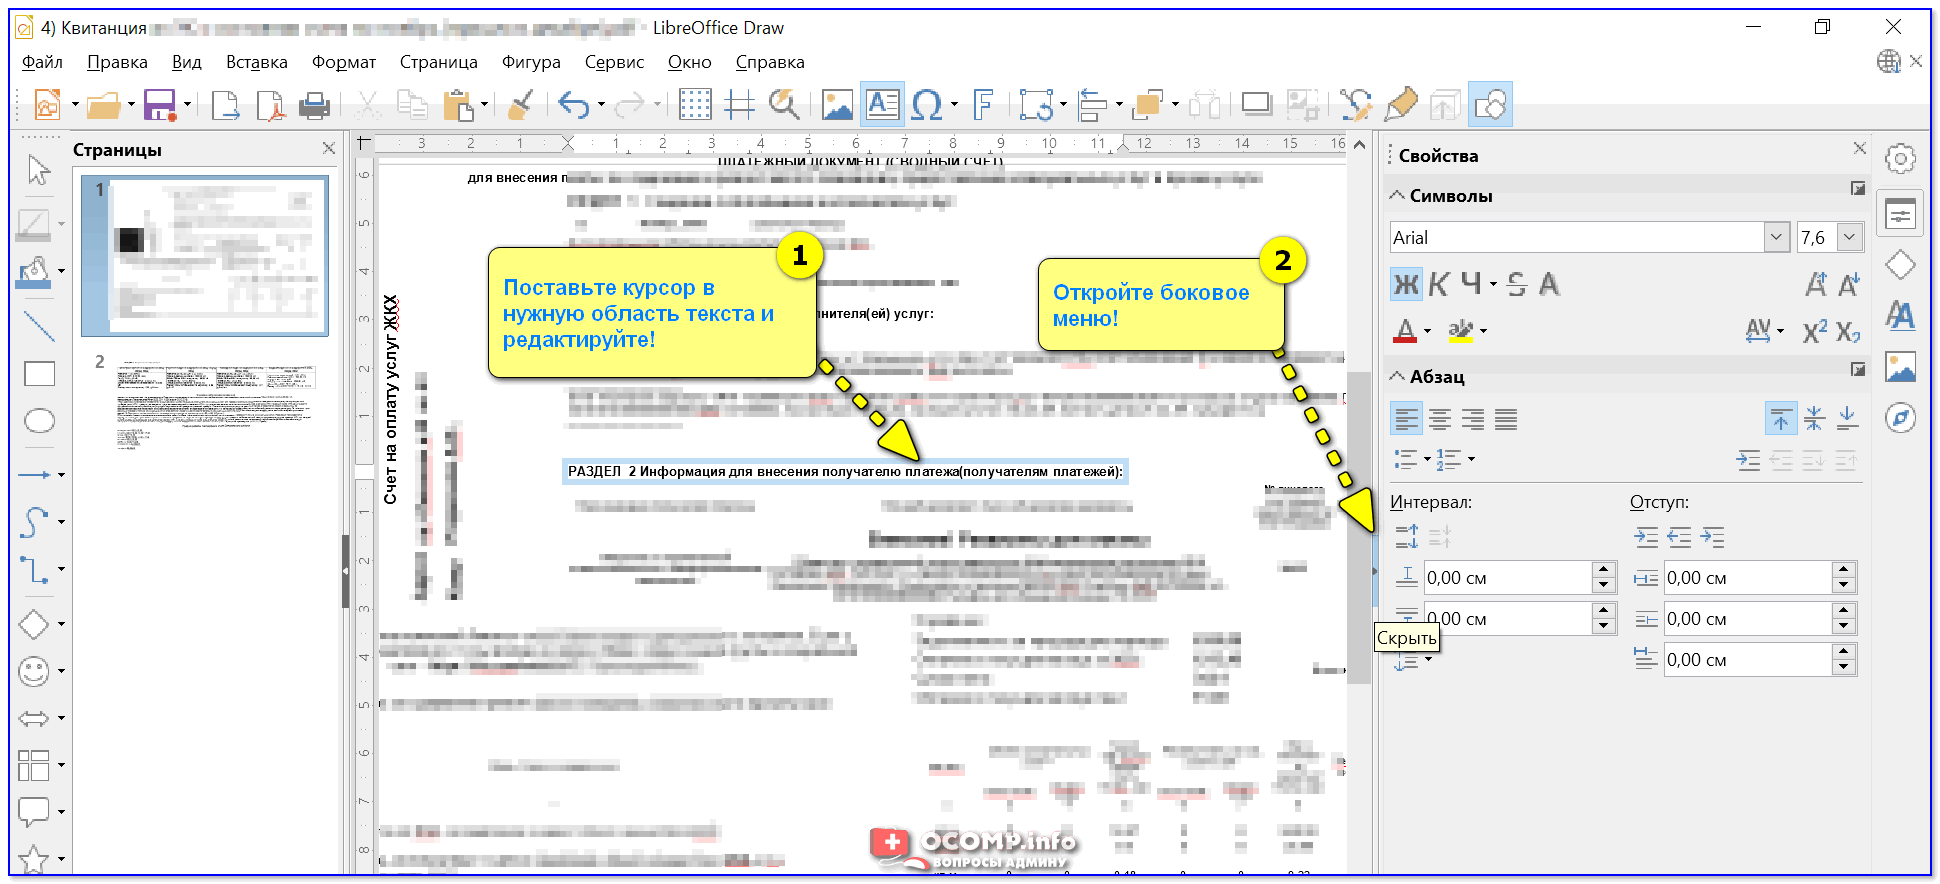 Скрин работы с LibreOffice Draw